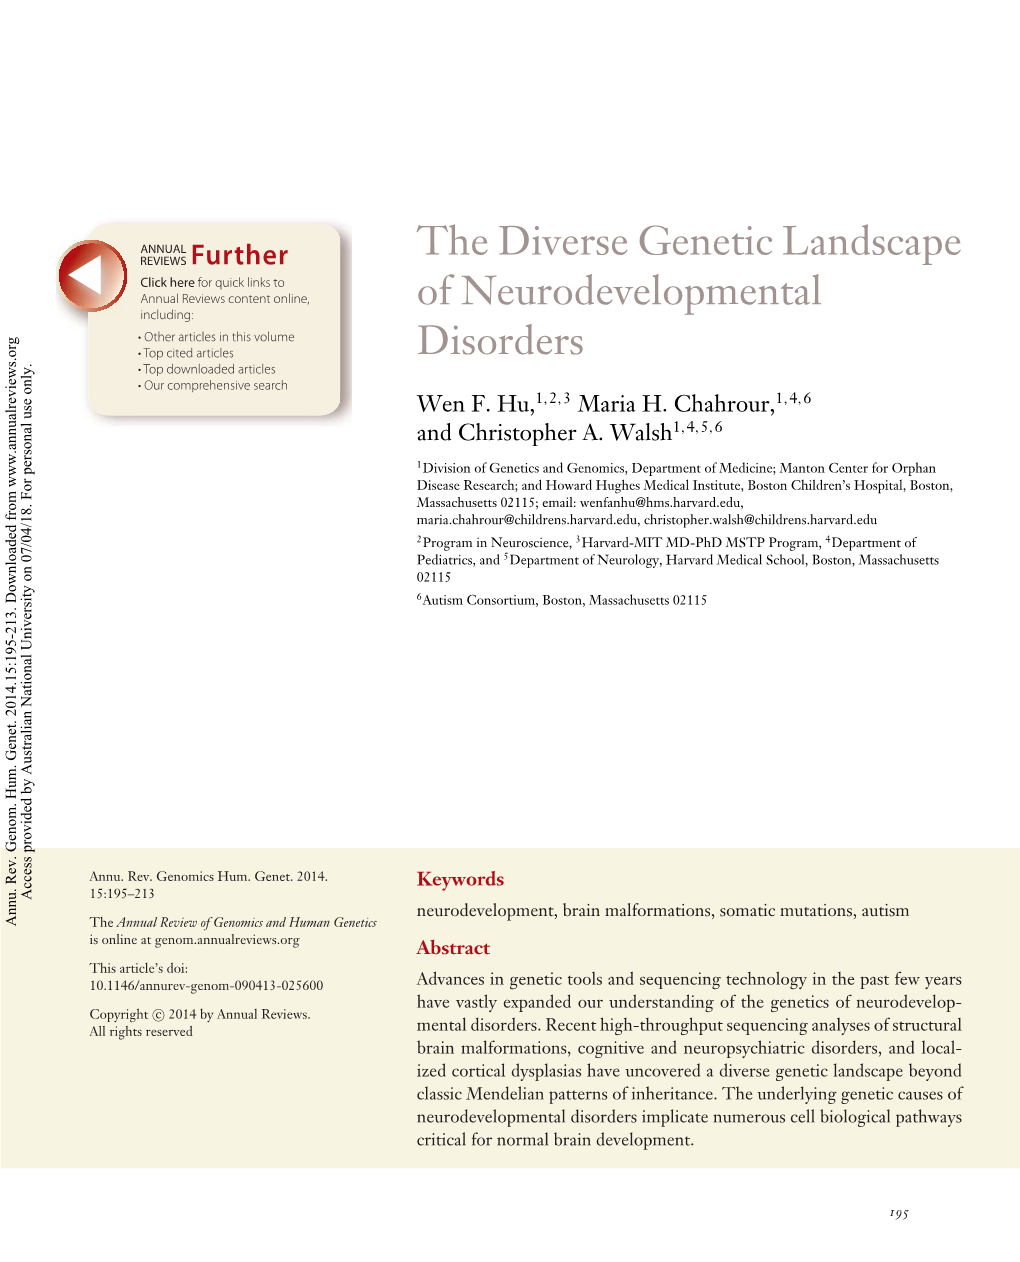 The Diverse Genetic Landscape of Neurodevelopmental Disorders